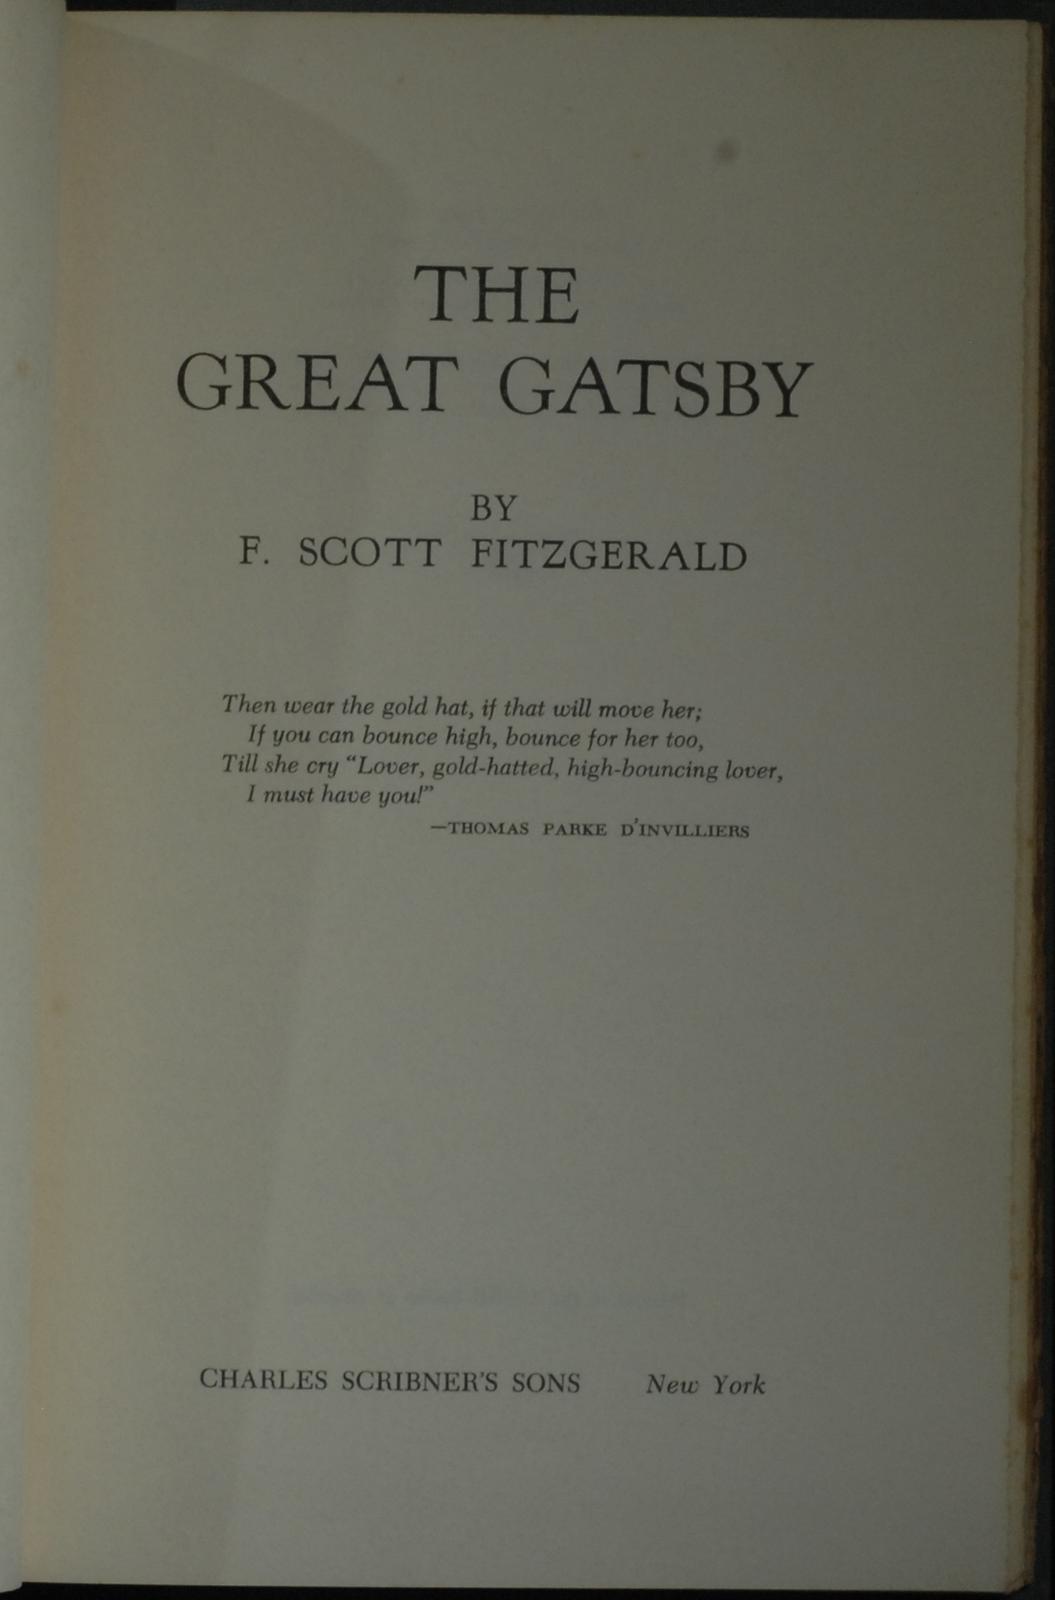 mbb006105d_-_Fitzgerald_F_Scott_-_The_Great_Gatsby.jpg